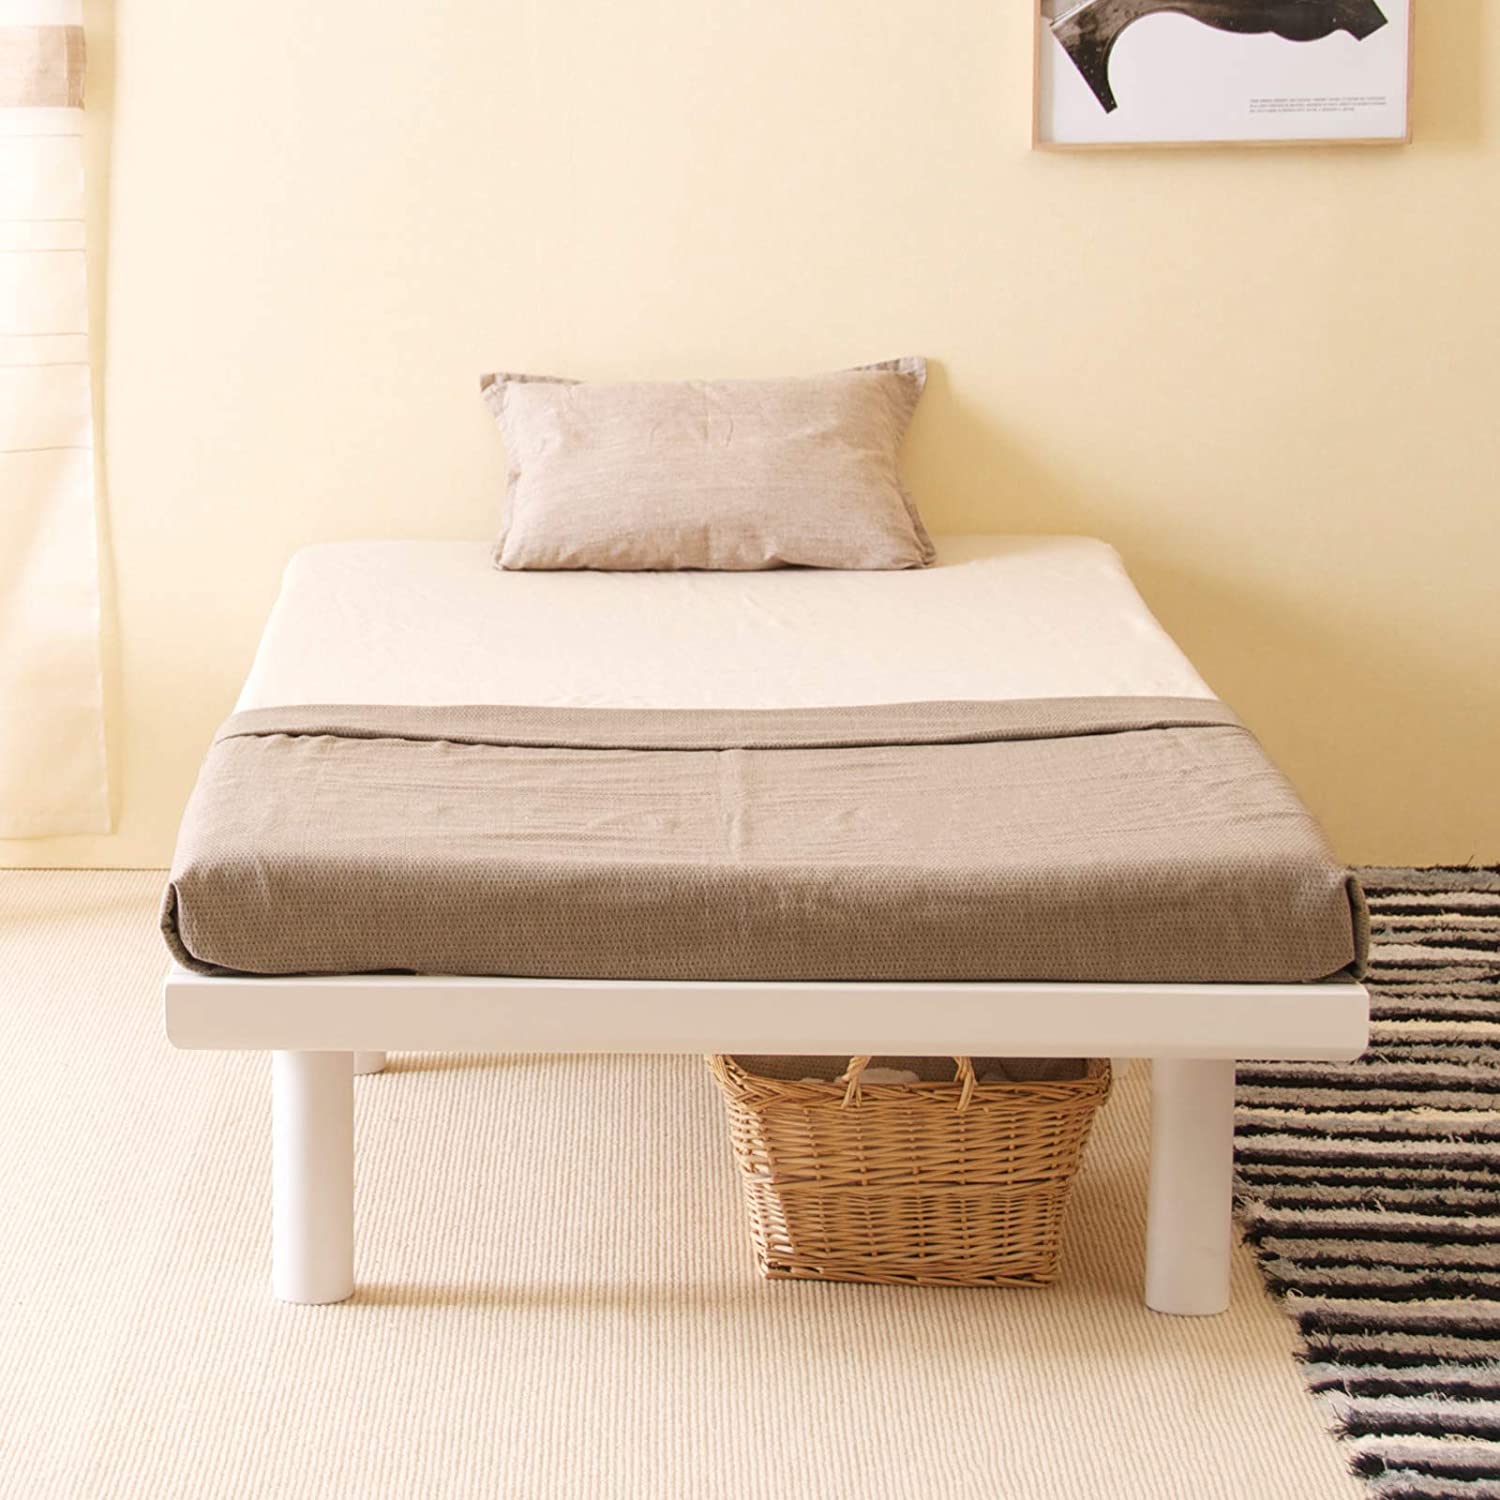 おすすめの和室用ベッド人気比較ランキング 折り畳み式も モノナビ おすすめの家具 家電のランキング